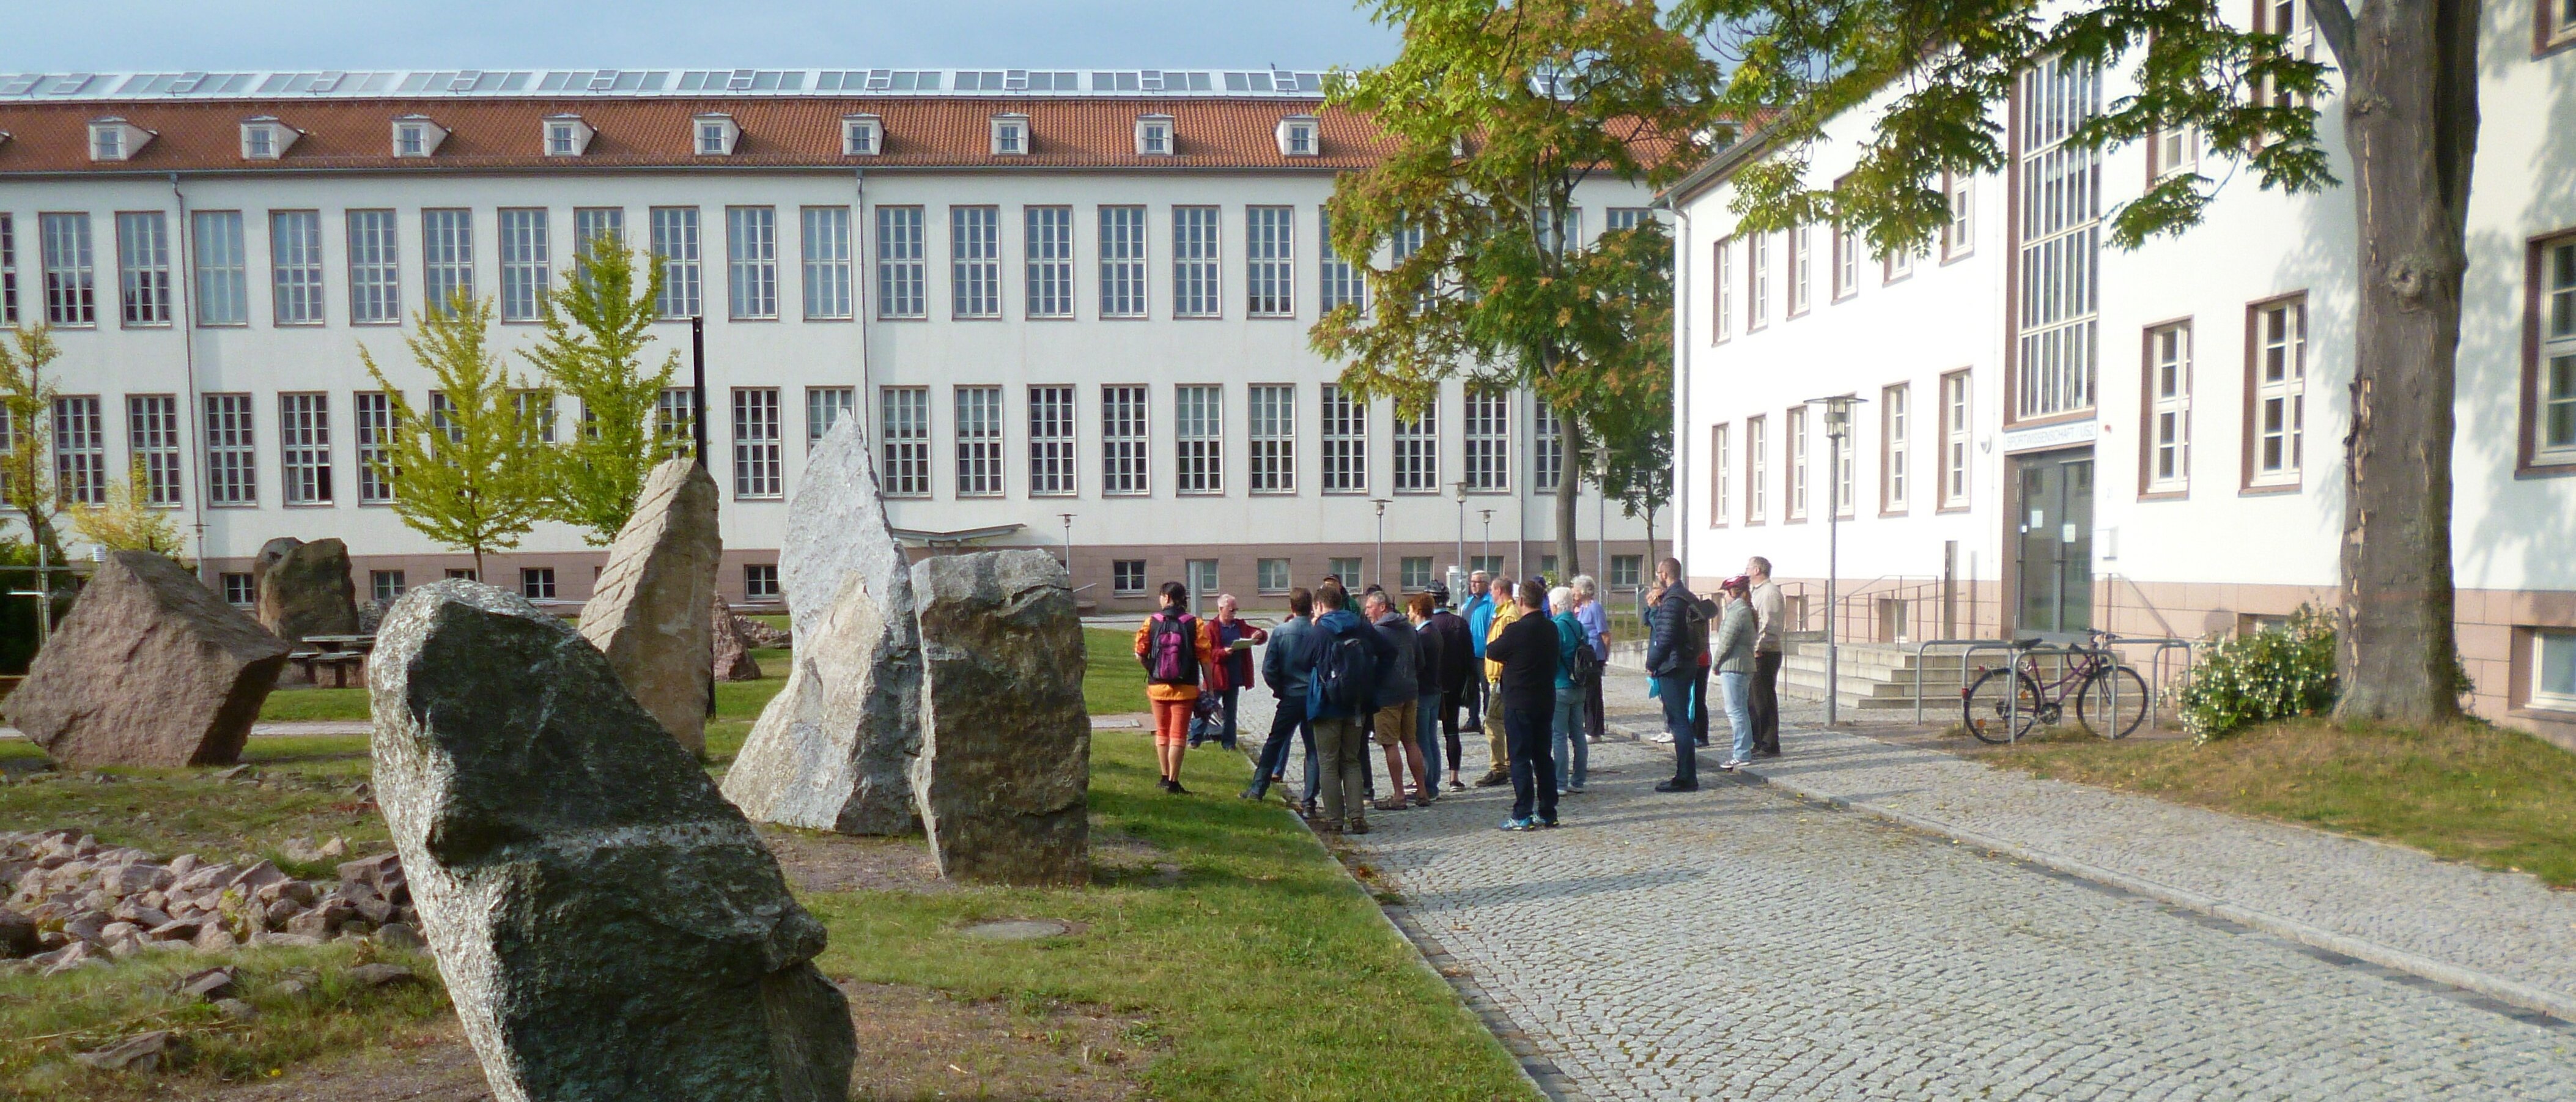 Menschengruppe vor großen Steinen verschiedener Gesteinsarten, im Hintergrund Universitätsgebäude